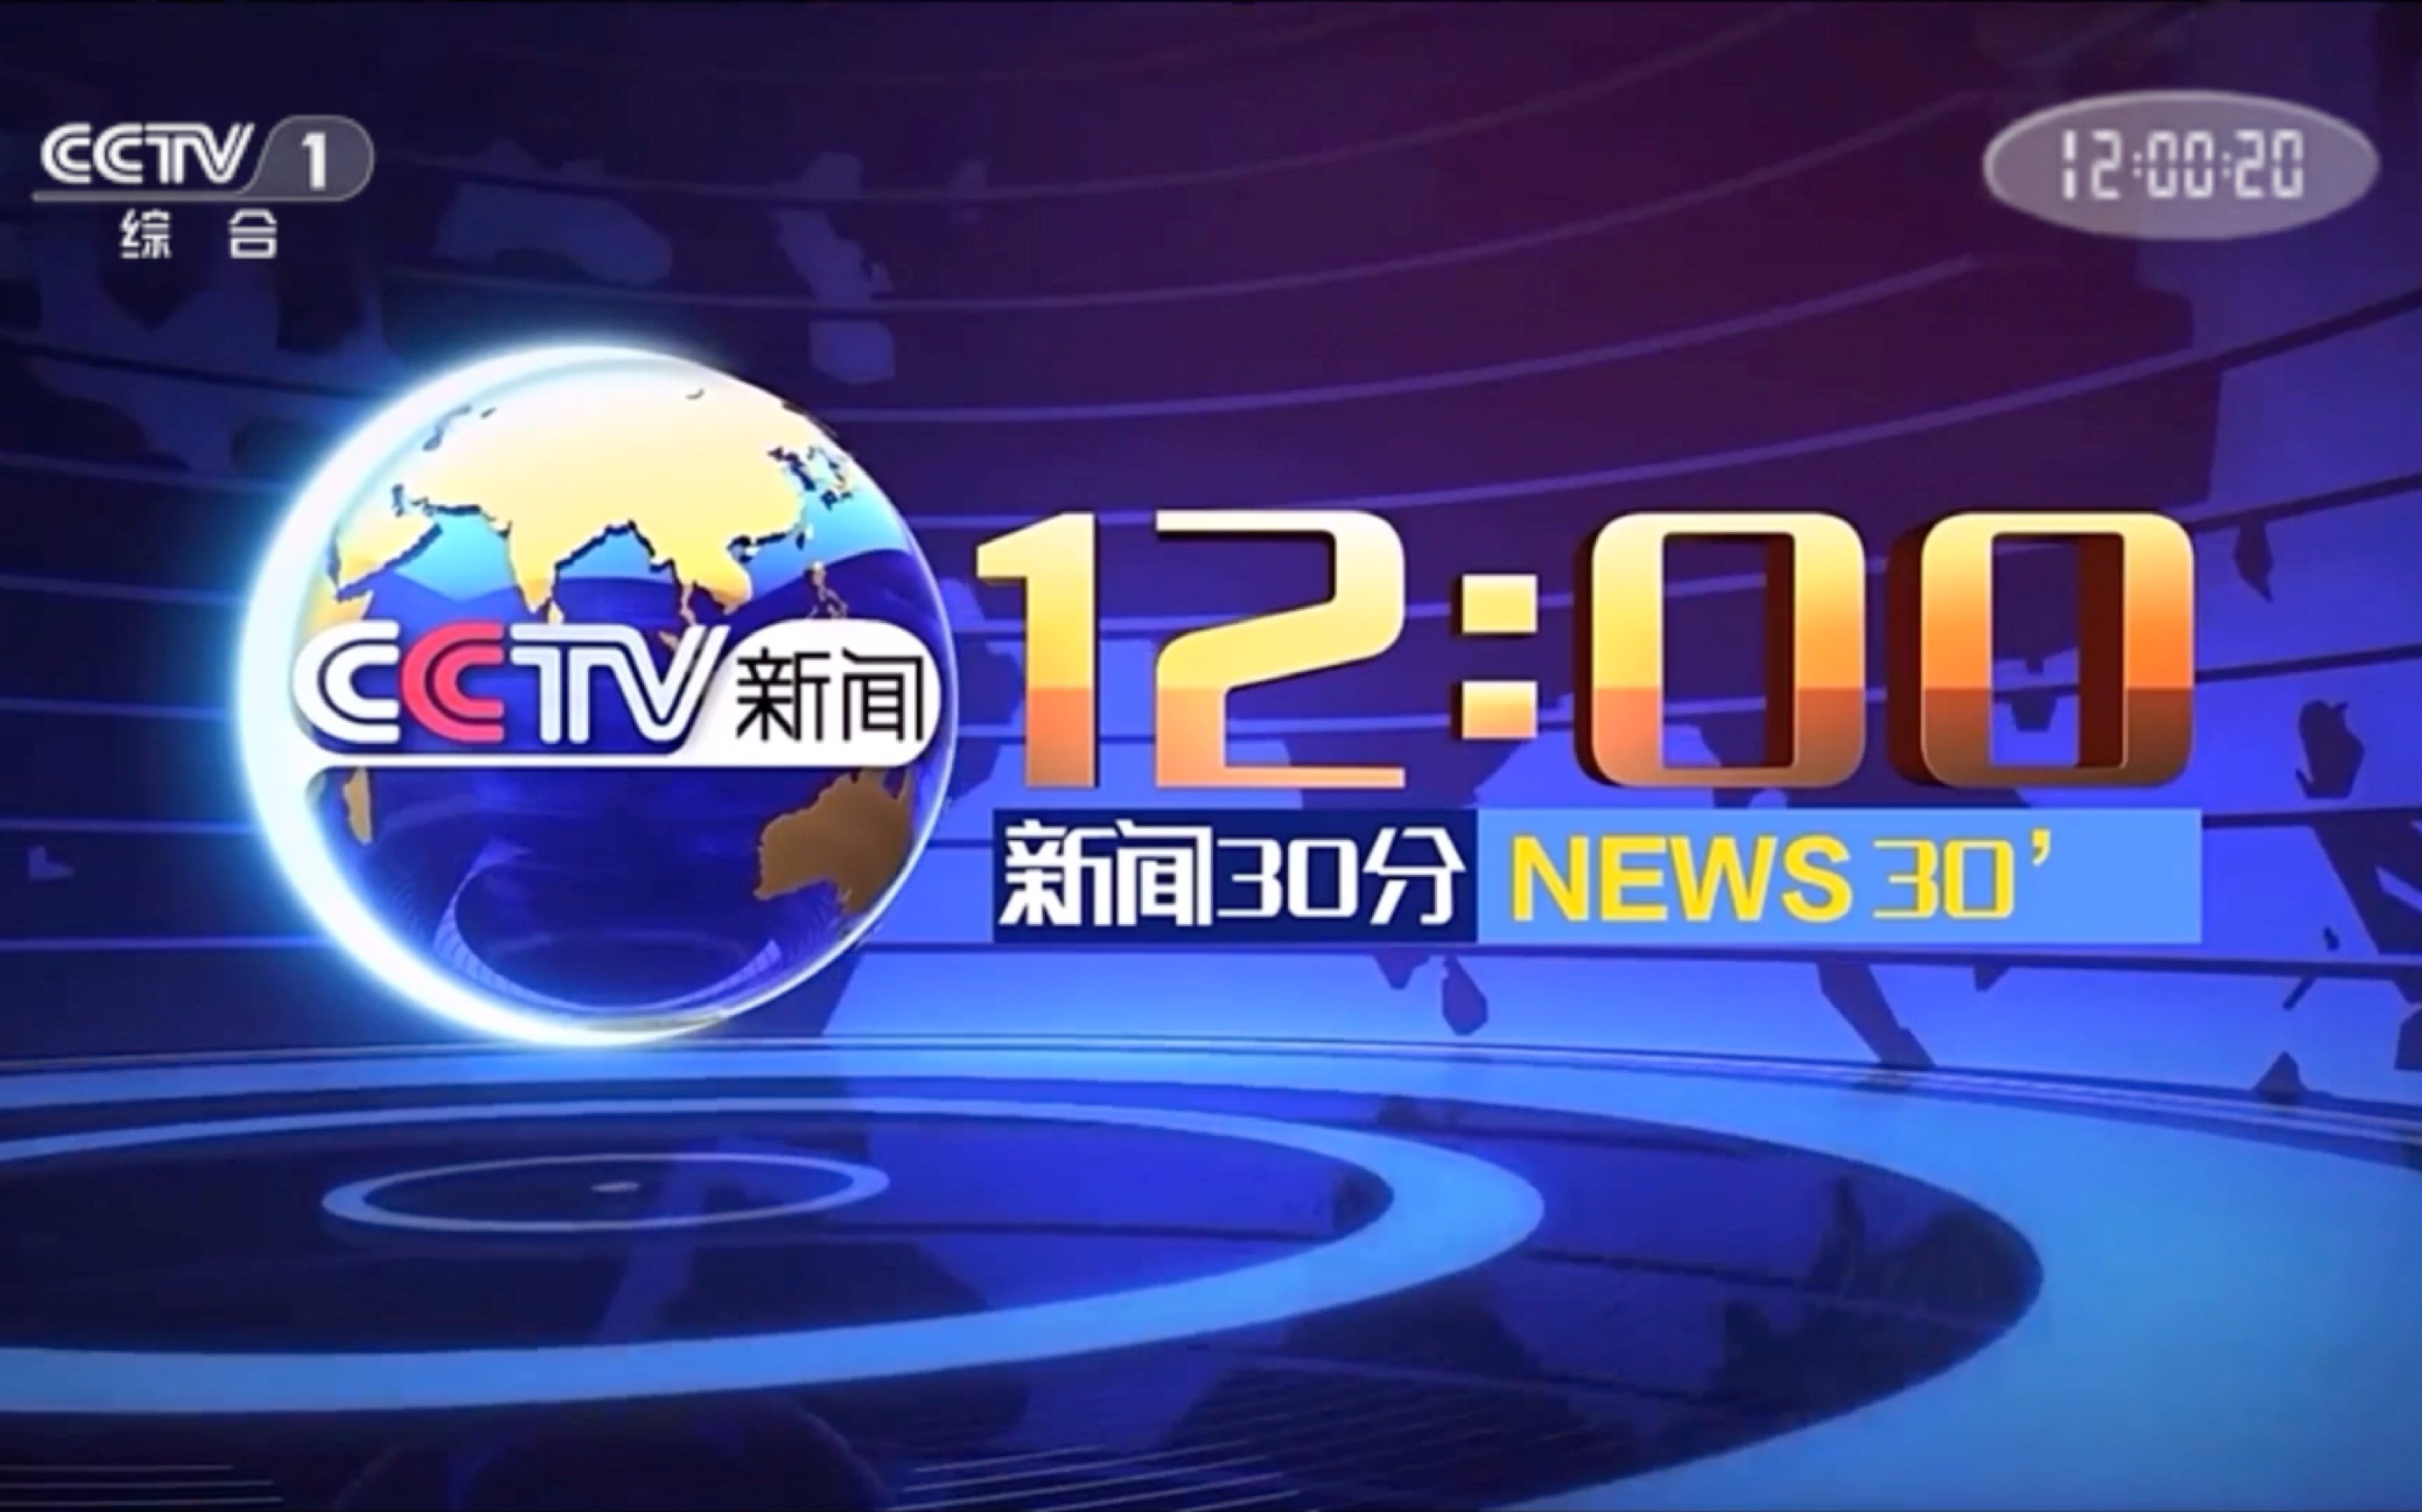 【cmg/cctv1】《新闻30分》临时在n01演播室播出 2023/3/4